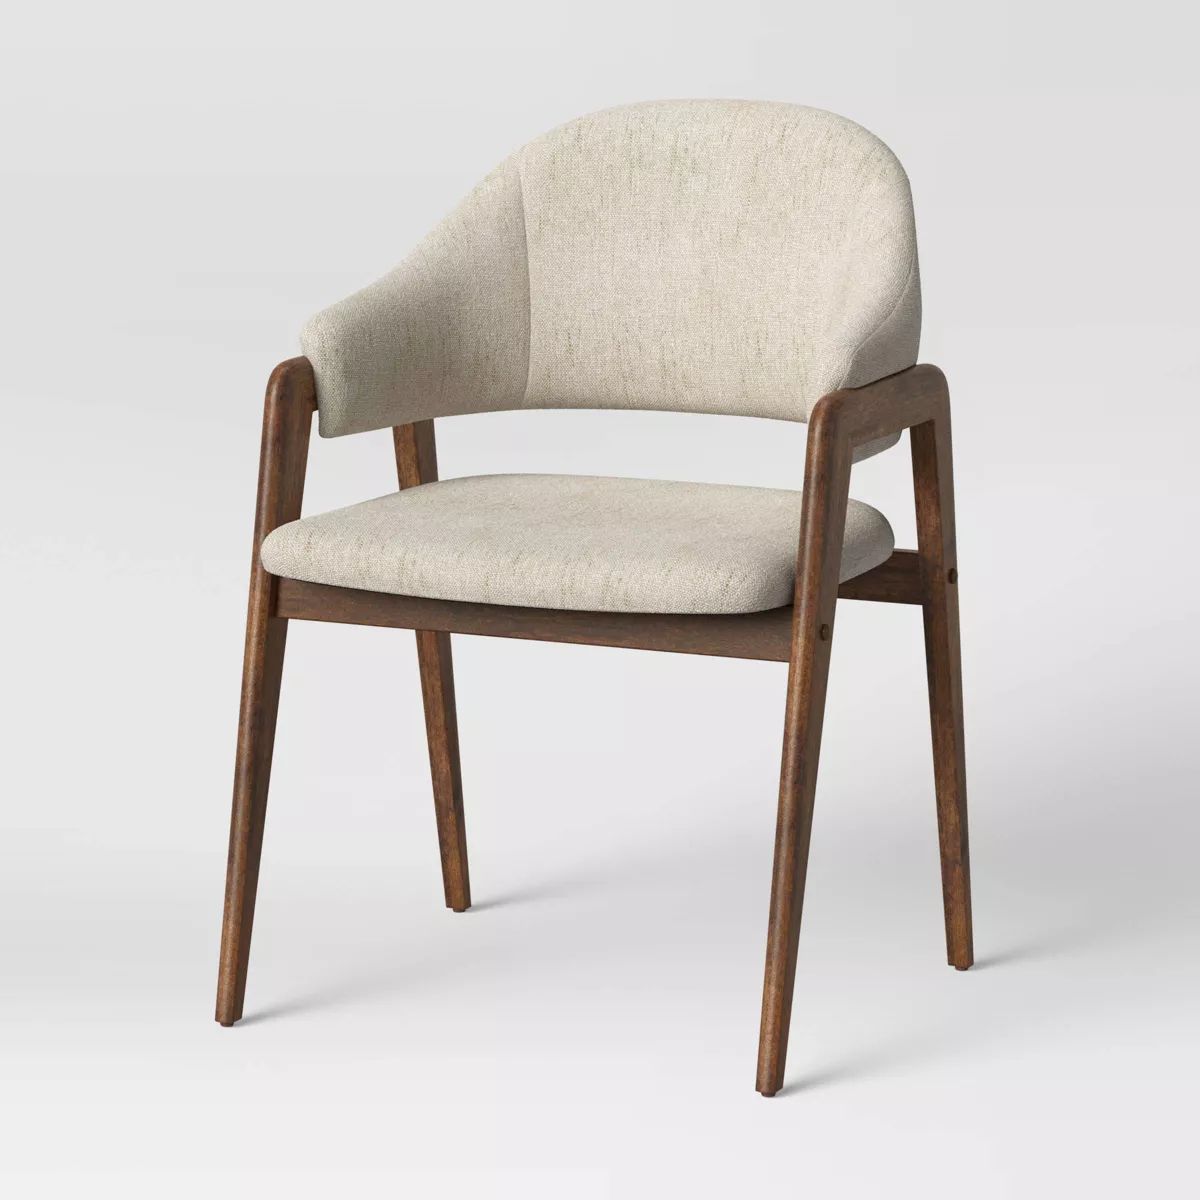 Ingleside Open Back Upholstered Wood Frame Dining Chair Linen - Threshold™ | Target